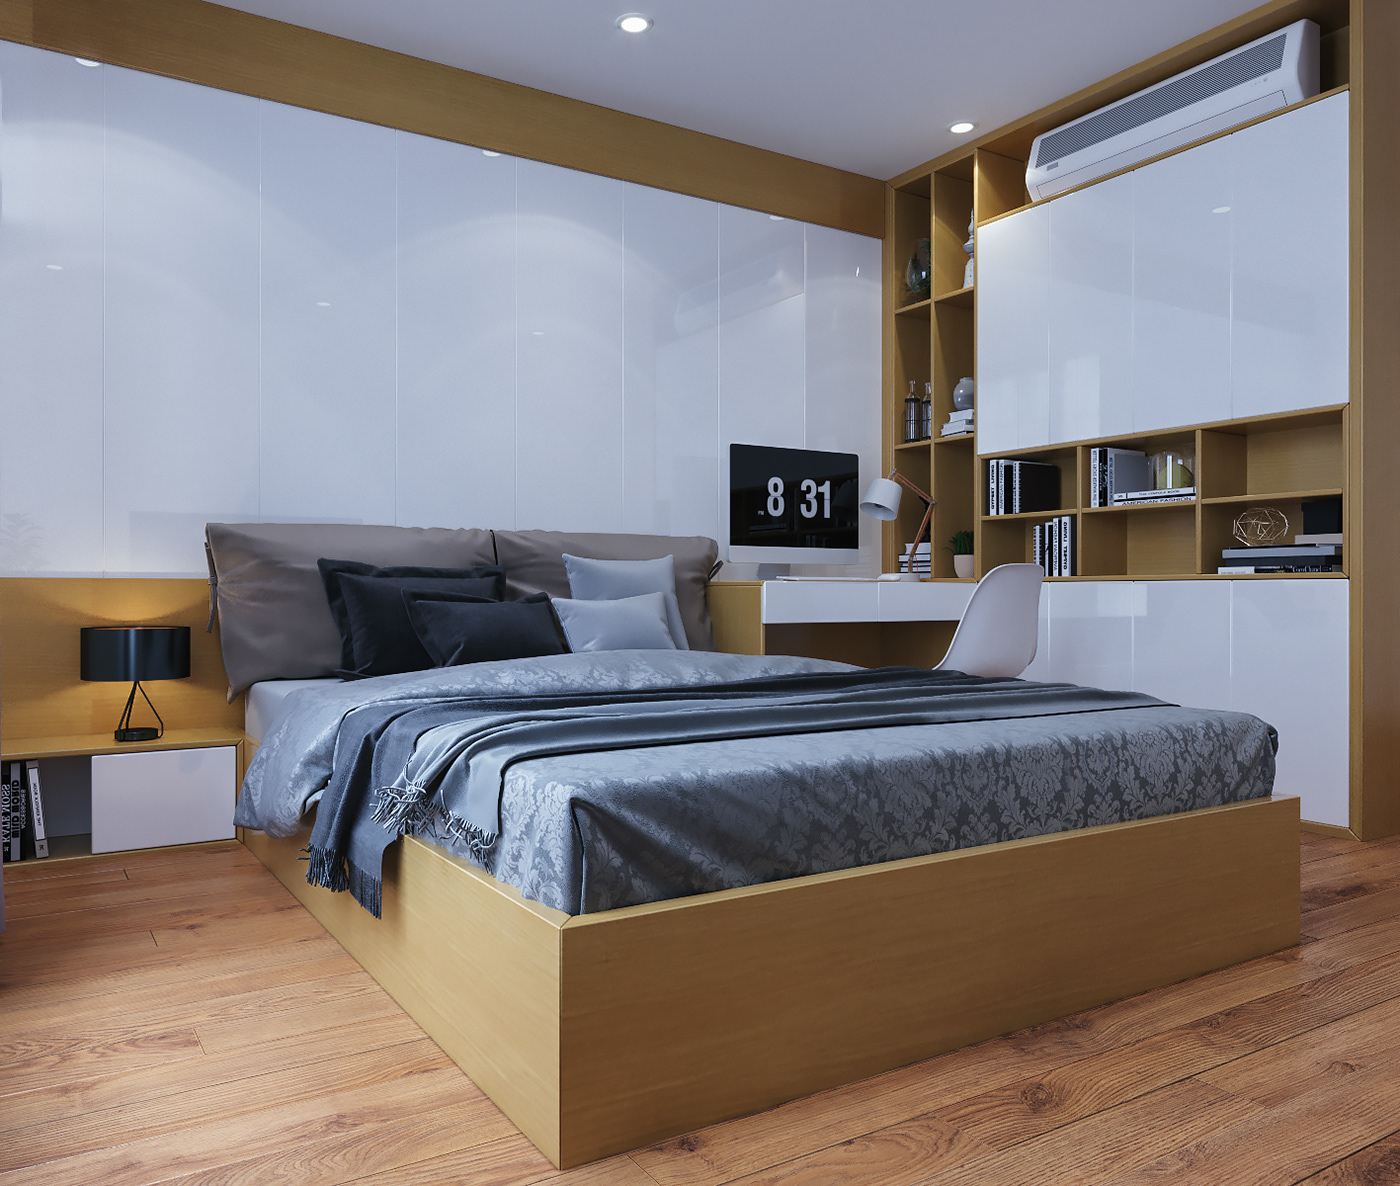 thiết kế nội thất chung cư tại Hà Nội Thiết kế nội thất căn hộ E4 0 1537930130